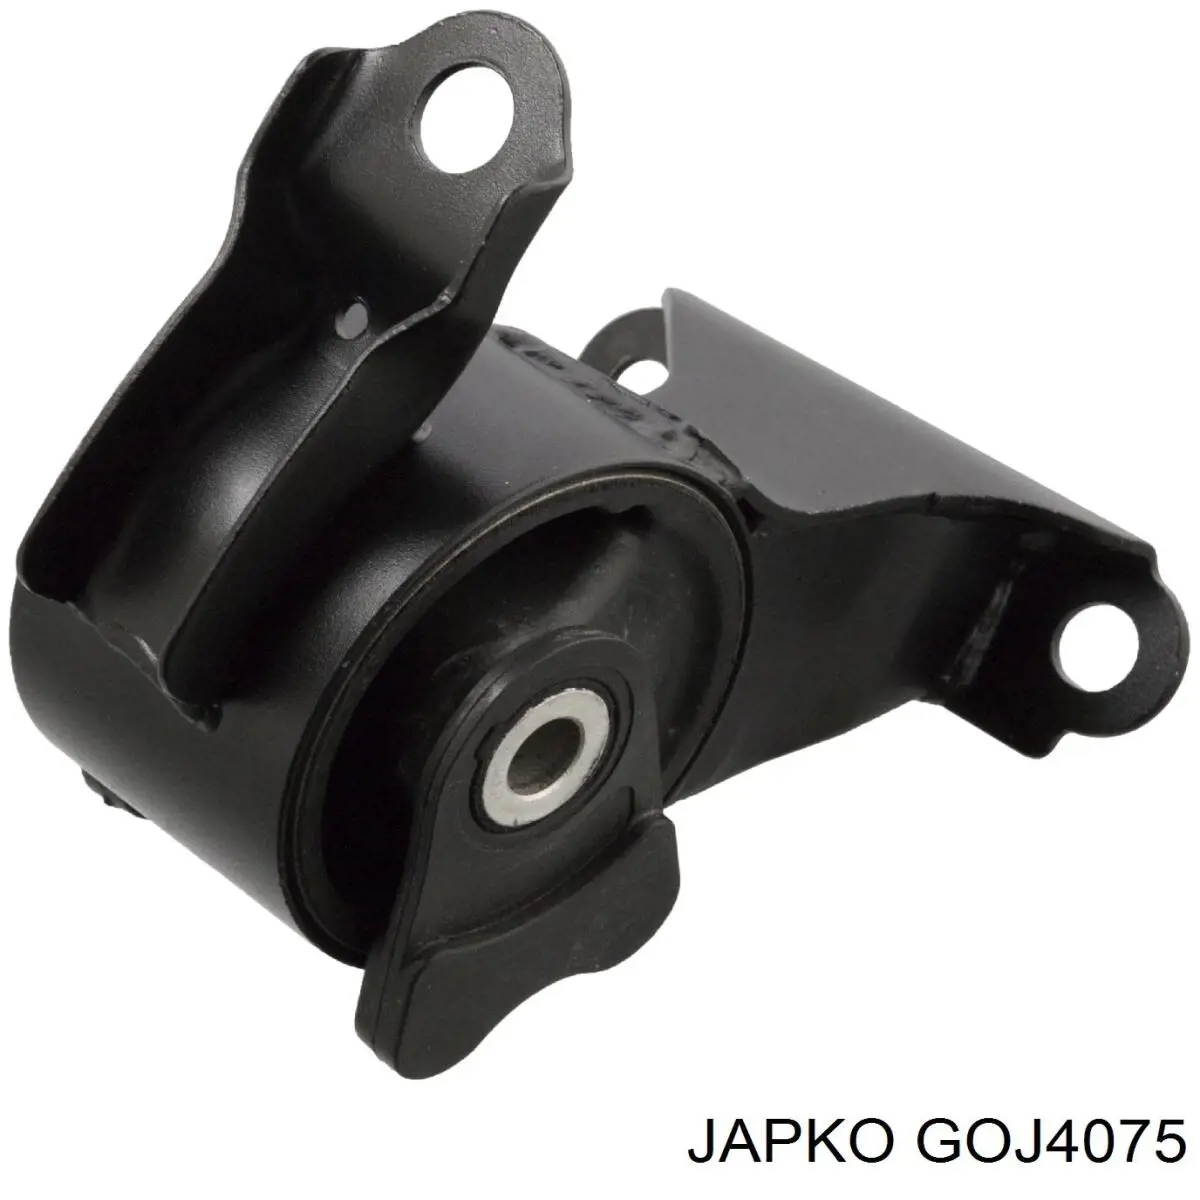 GOJ4075 Japko coxim (suporte esquerdo de motor)